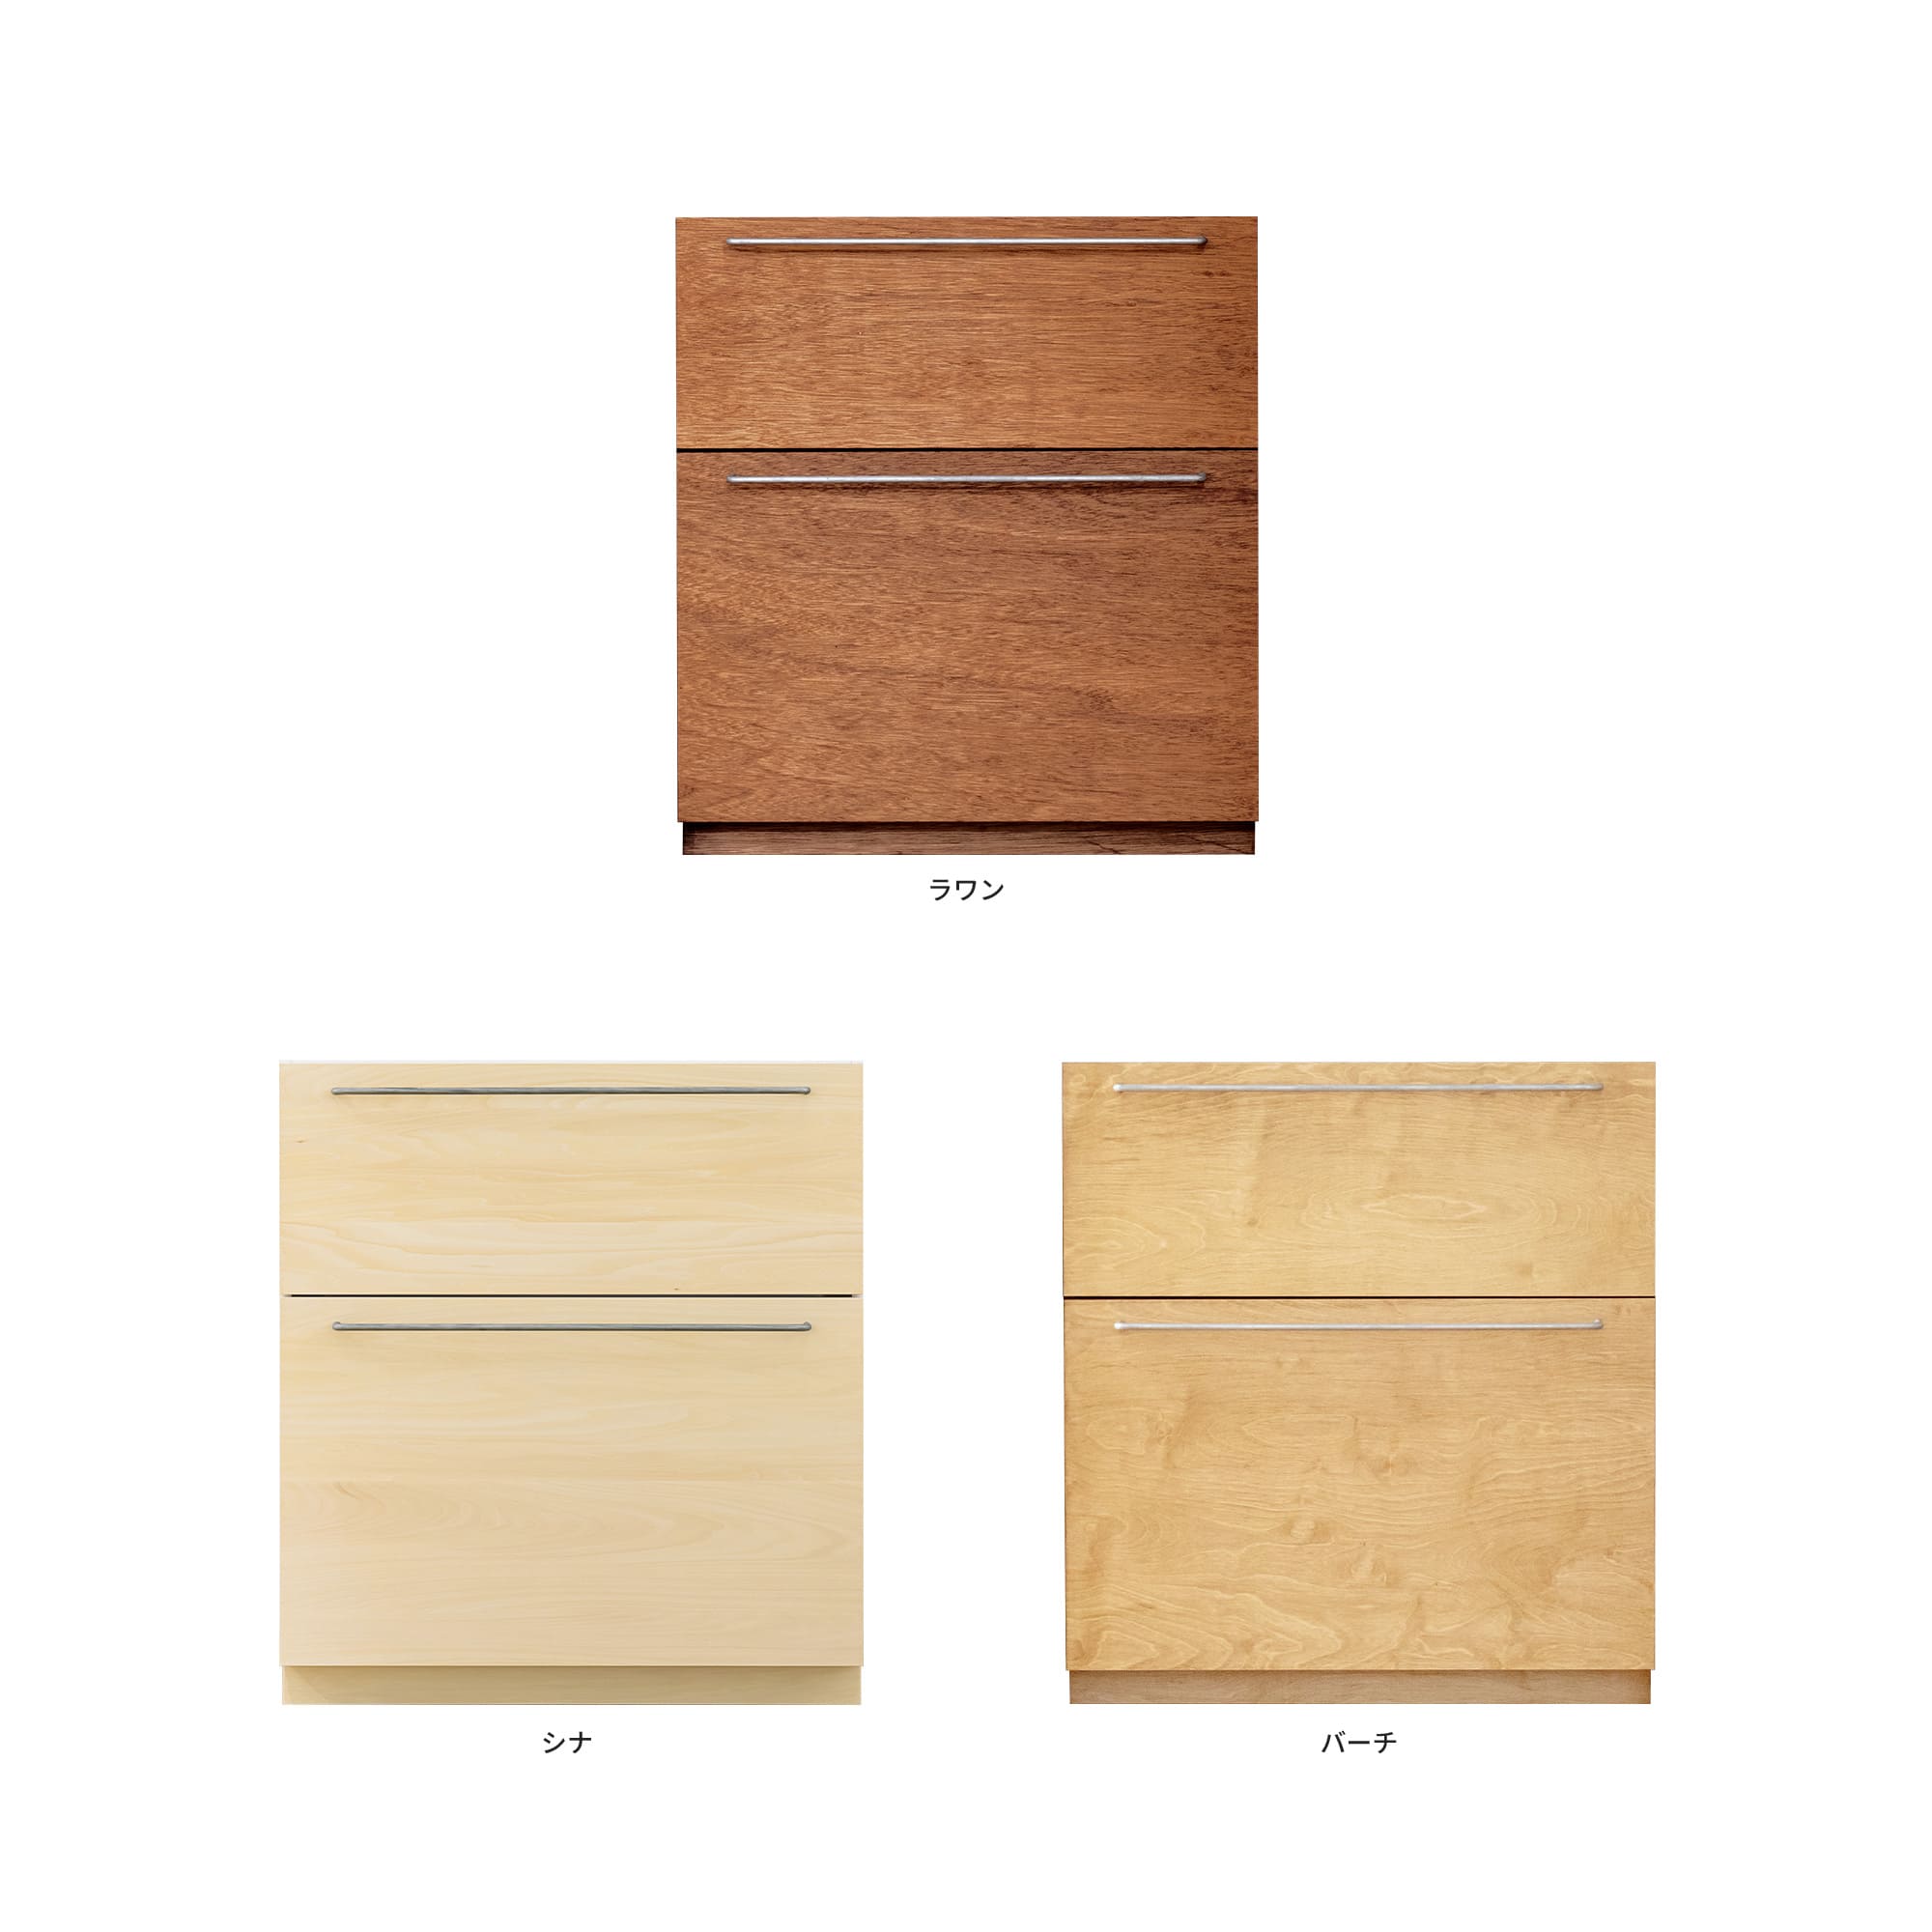 木製キッチンカウンター 引き出し KB-KC023-15-G183 ラワン・シナ・バーチが選択できます